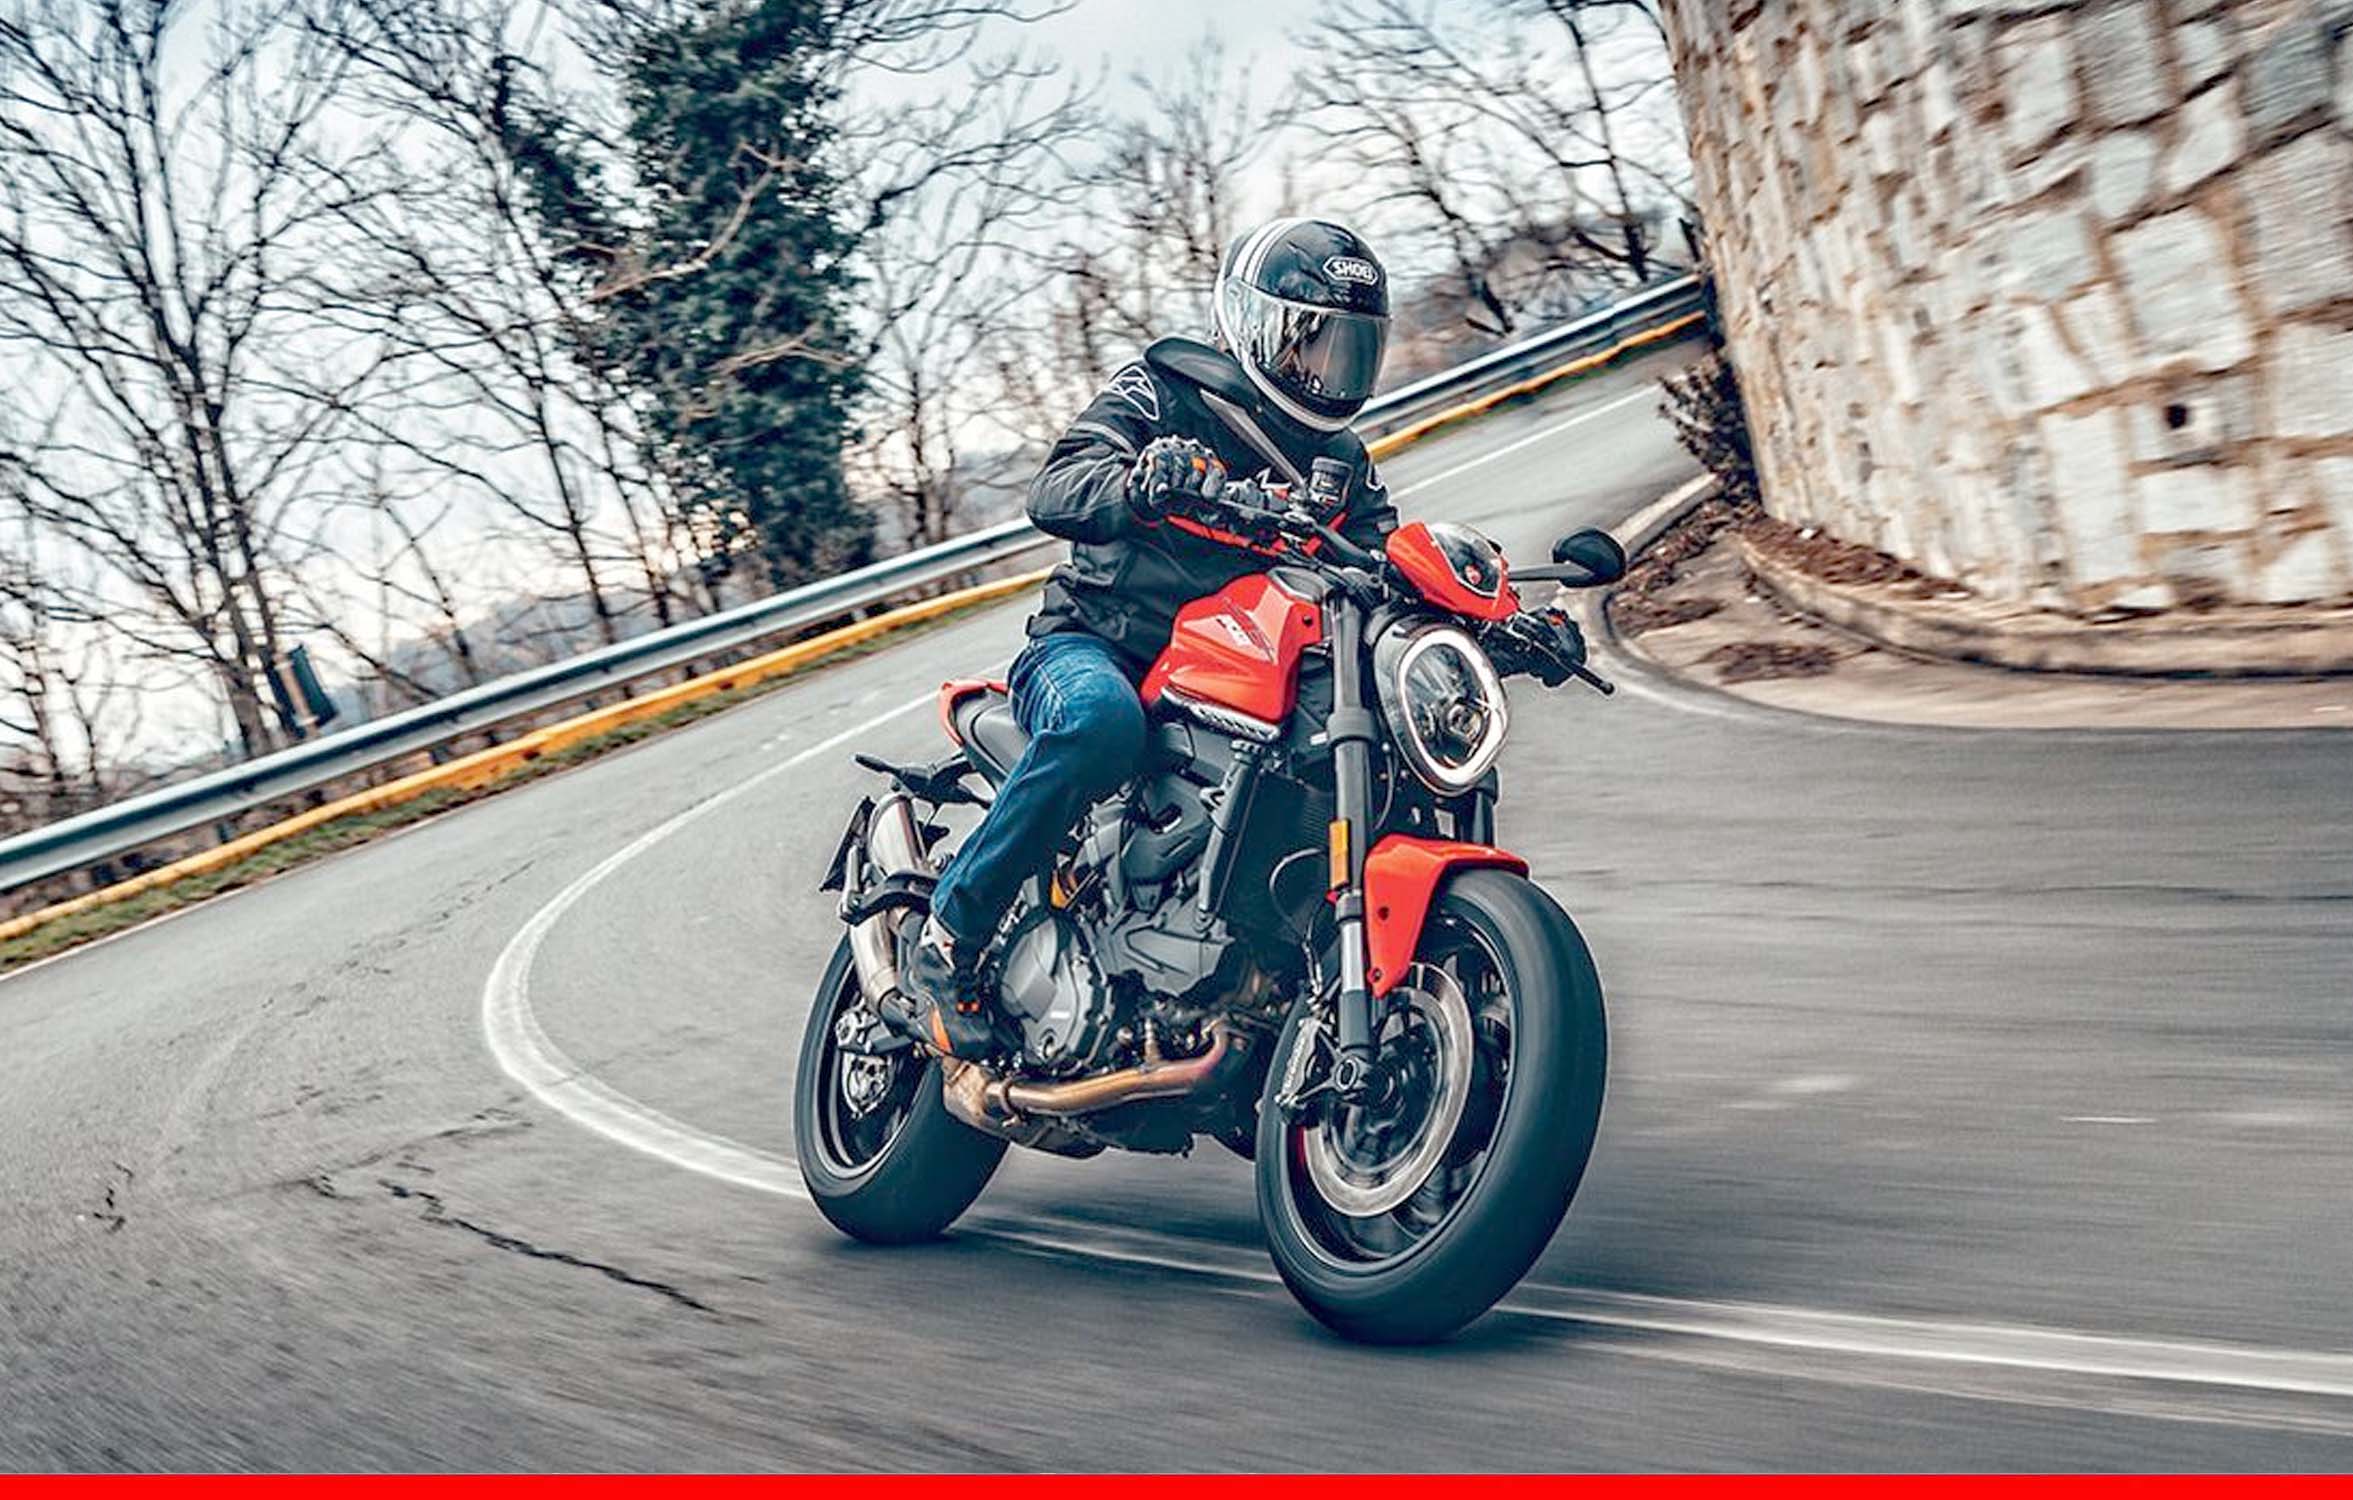 Ducati Monster की बुकिंग लॉन्चिंग से पहले ओपन हुई